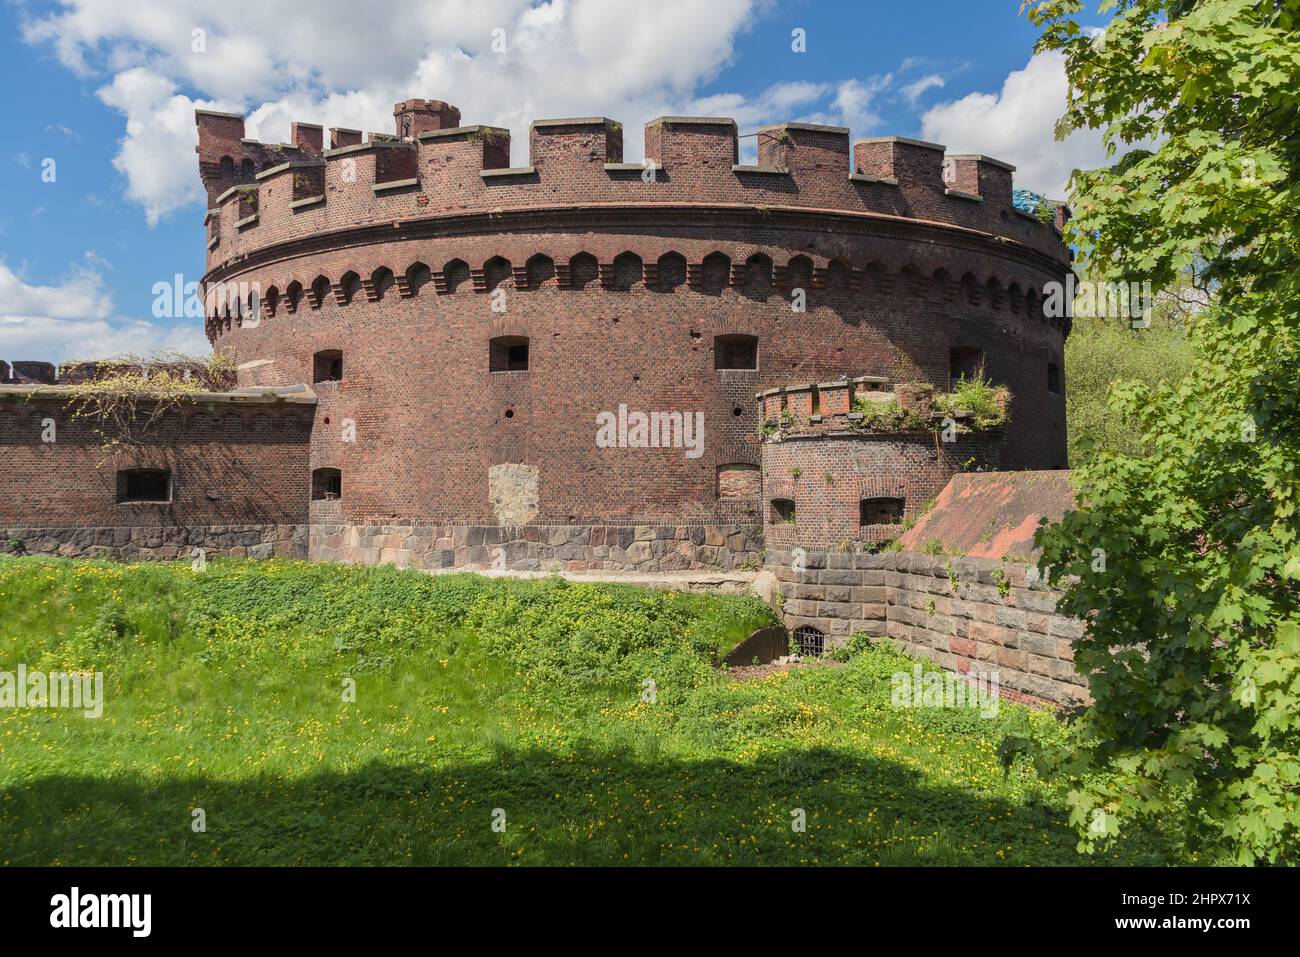 Esterno di una delle antiche fortificazioni di Koenigsberg in primavera giorno di sole Foto Stock